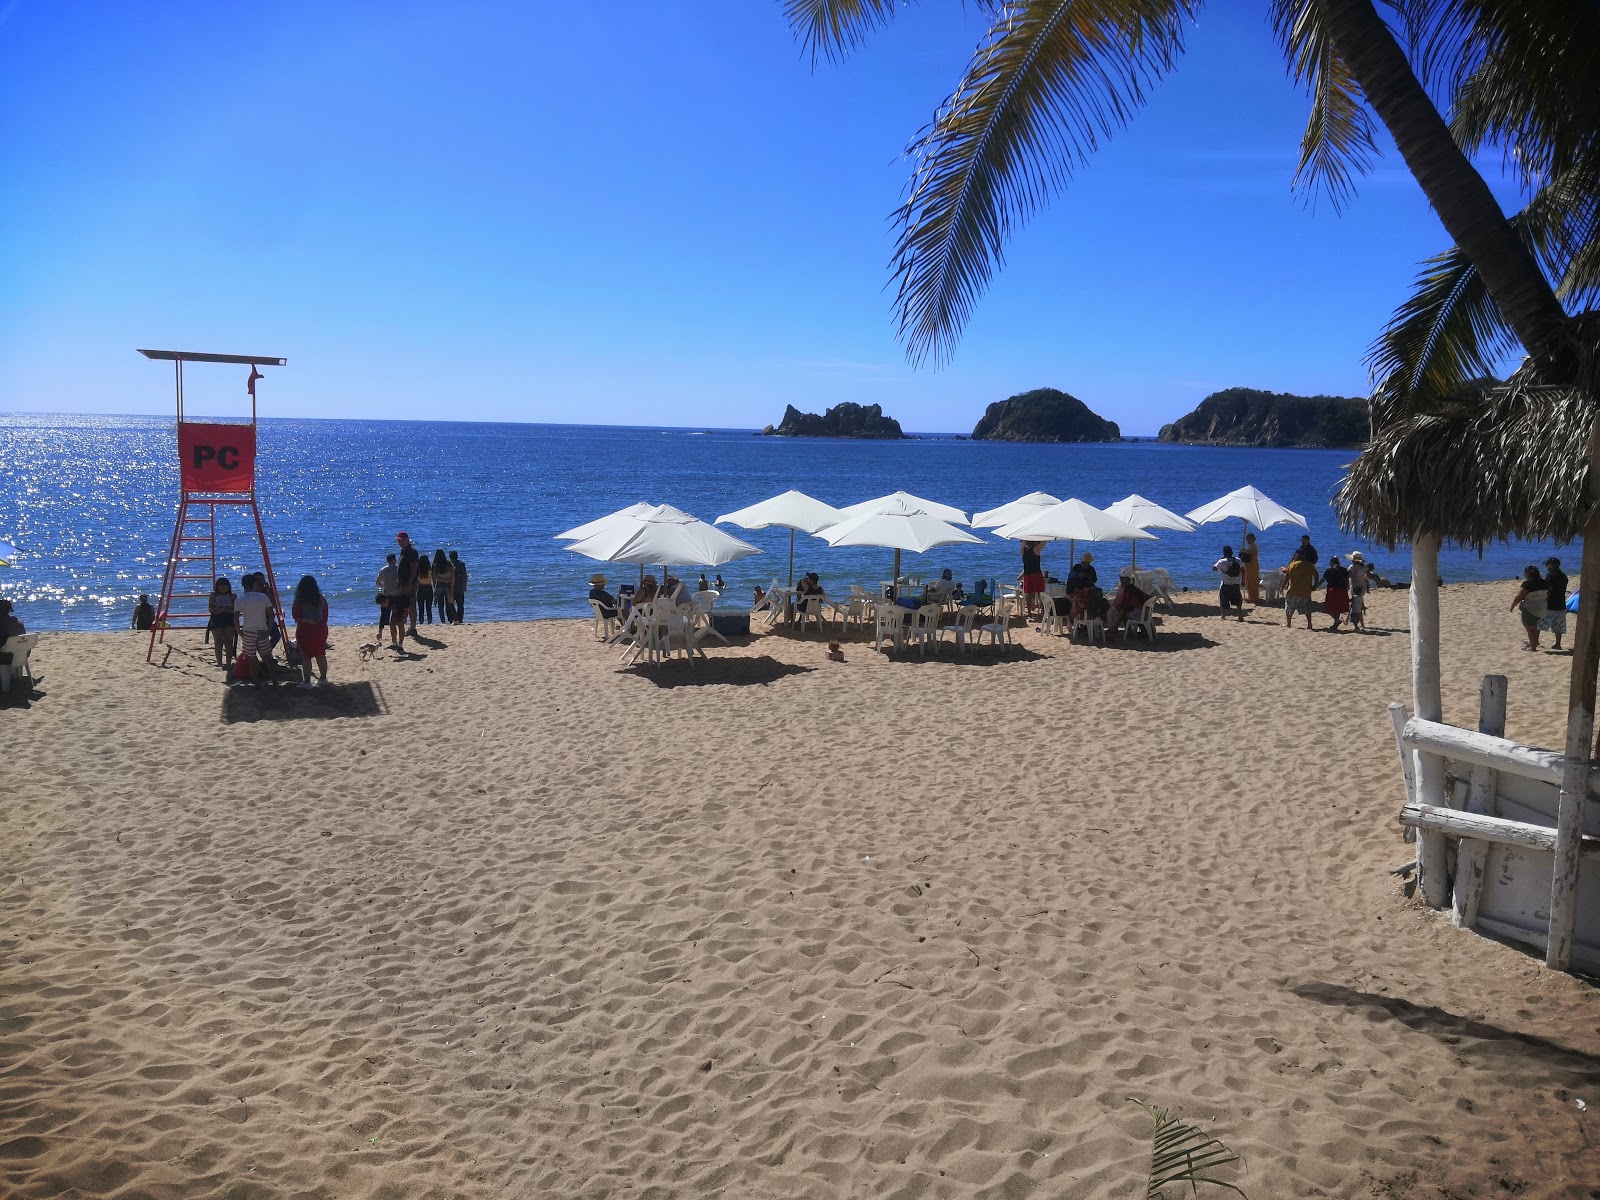 Foto af Playa De Melaque - populært sted blandt afslapningskendere